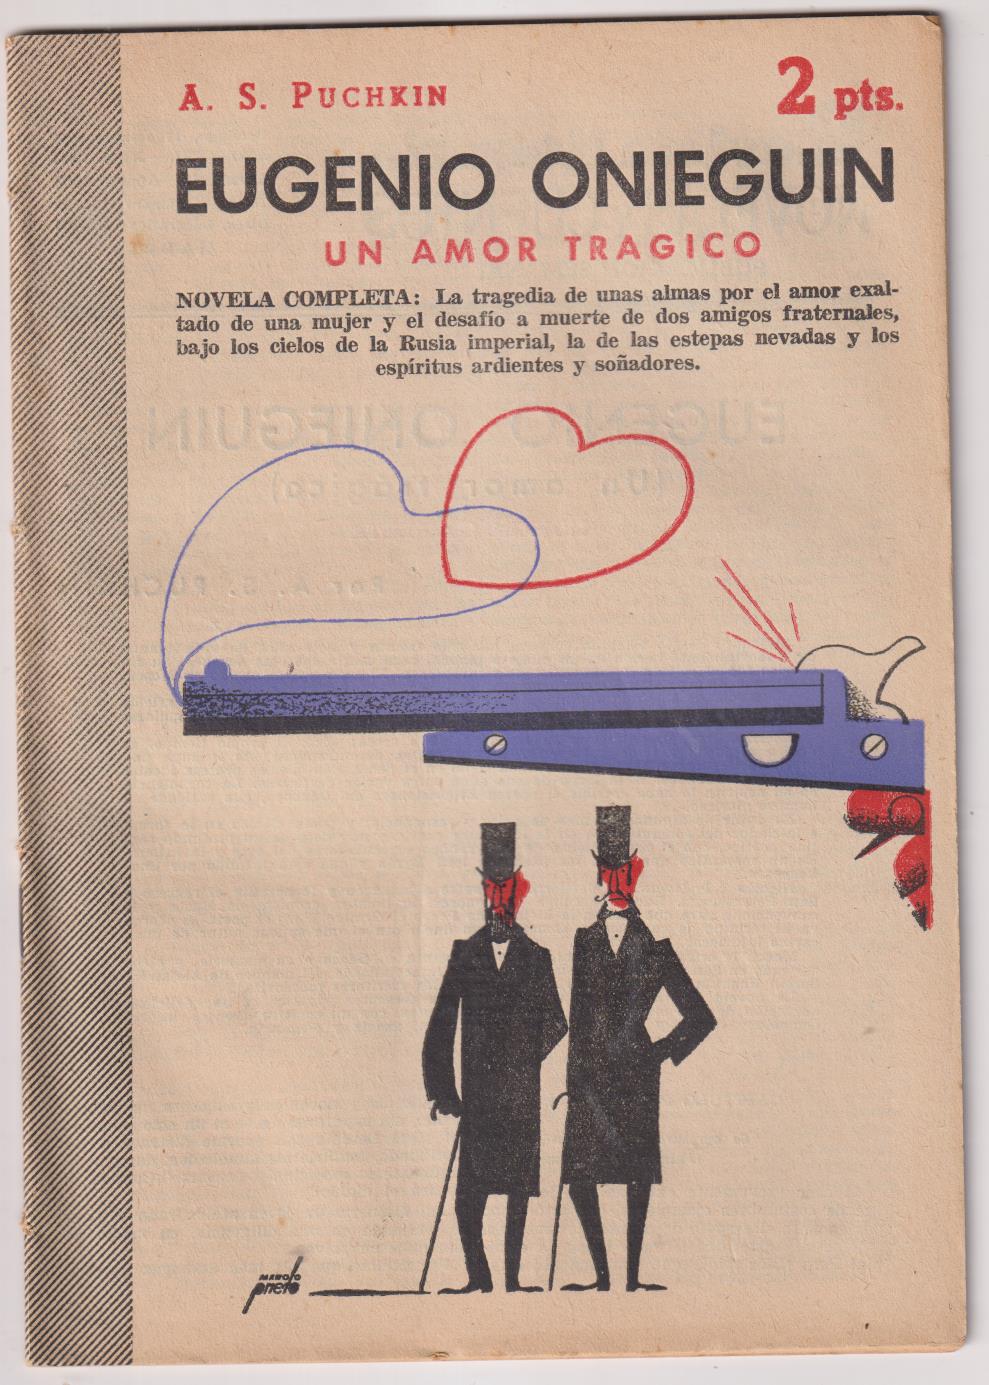 Revista Literaria Novelas y Cuentos nº 1223. A. S. Puchkin. Eugenio Onieguin, año 1954